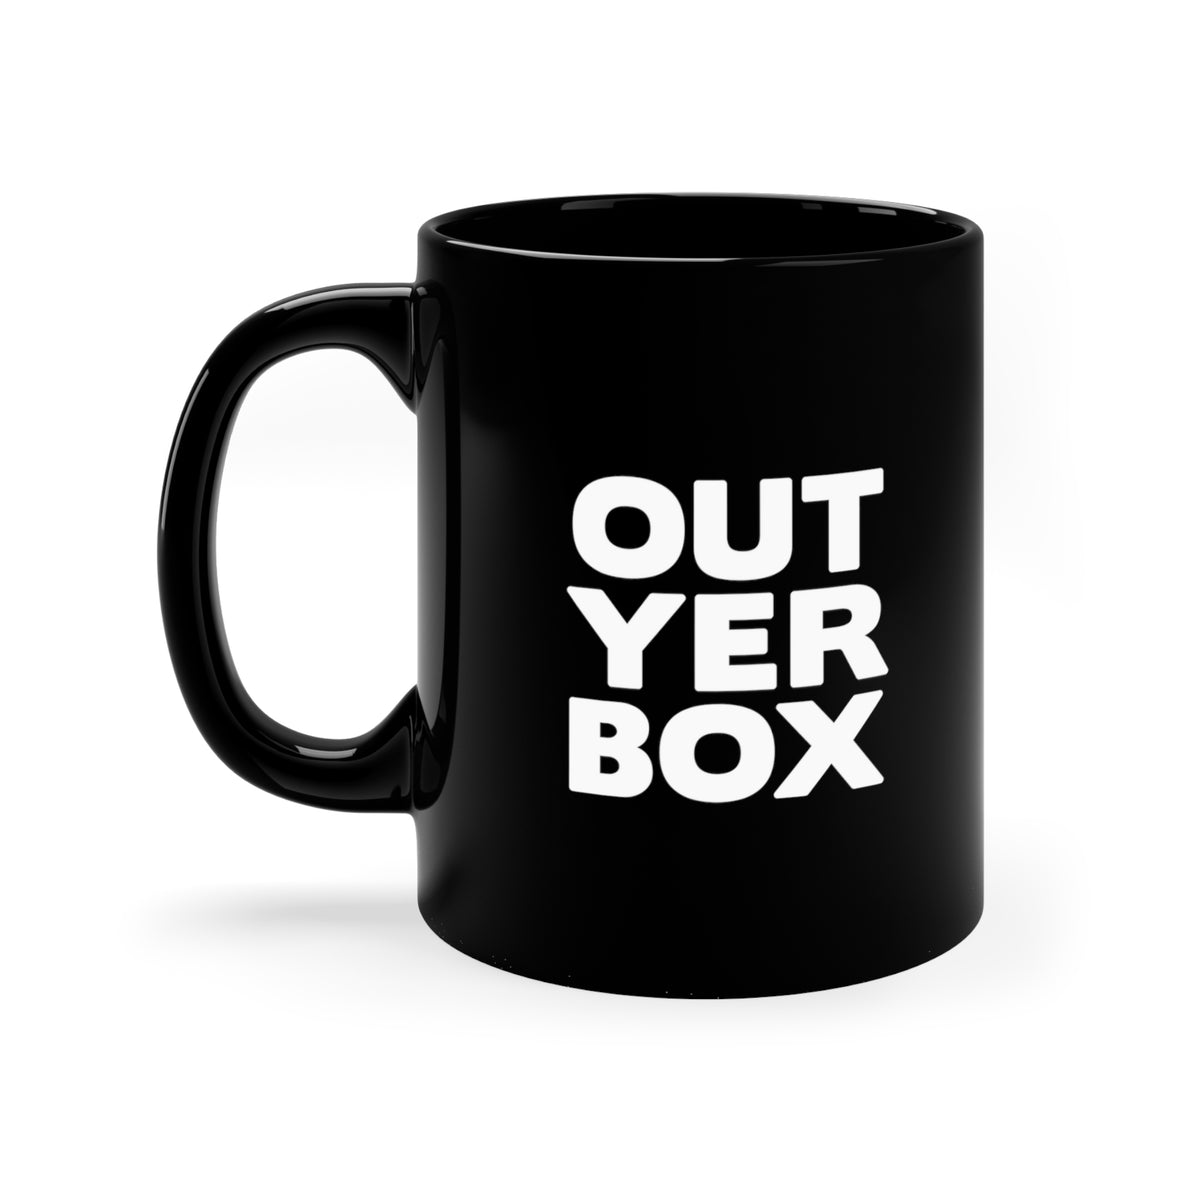 'Out Yer Box' Mug - Black